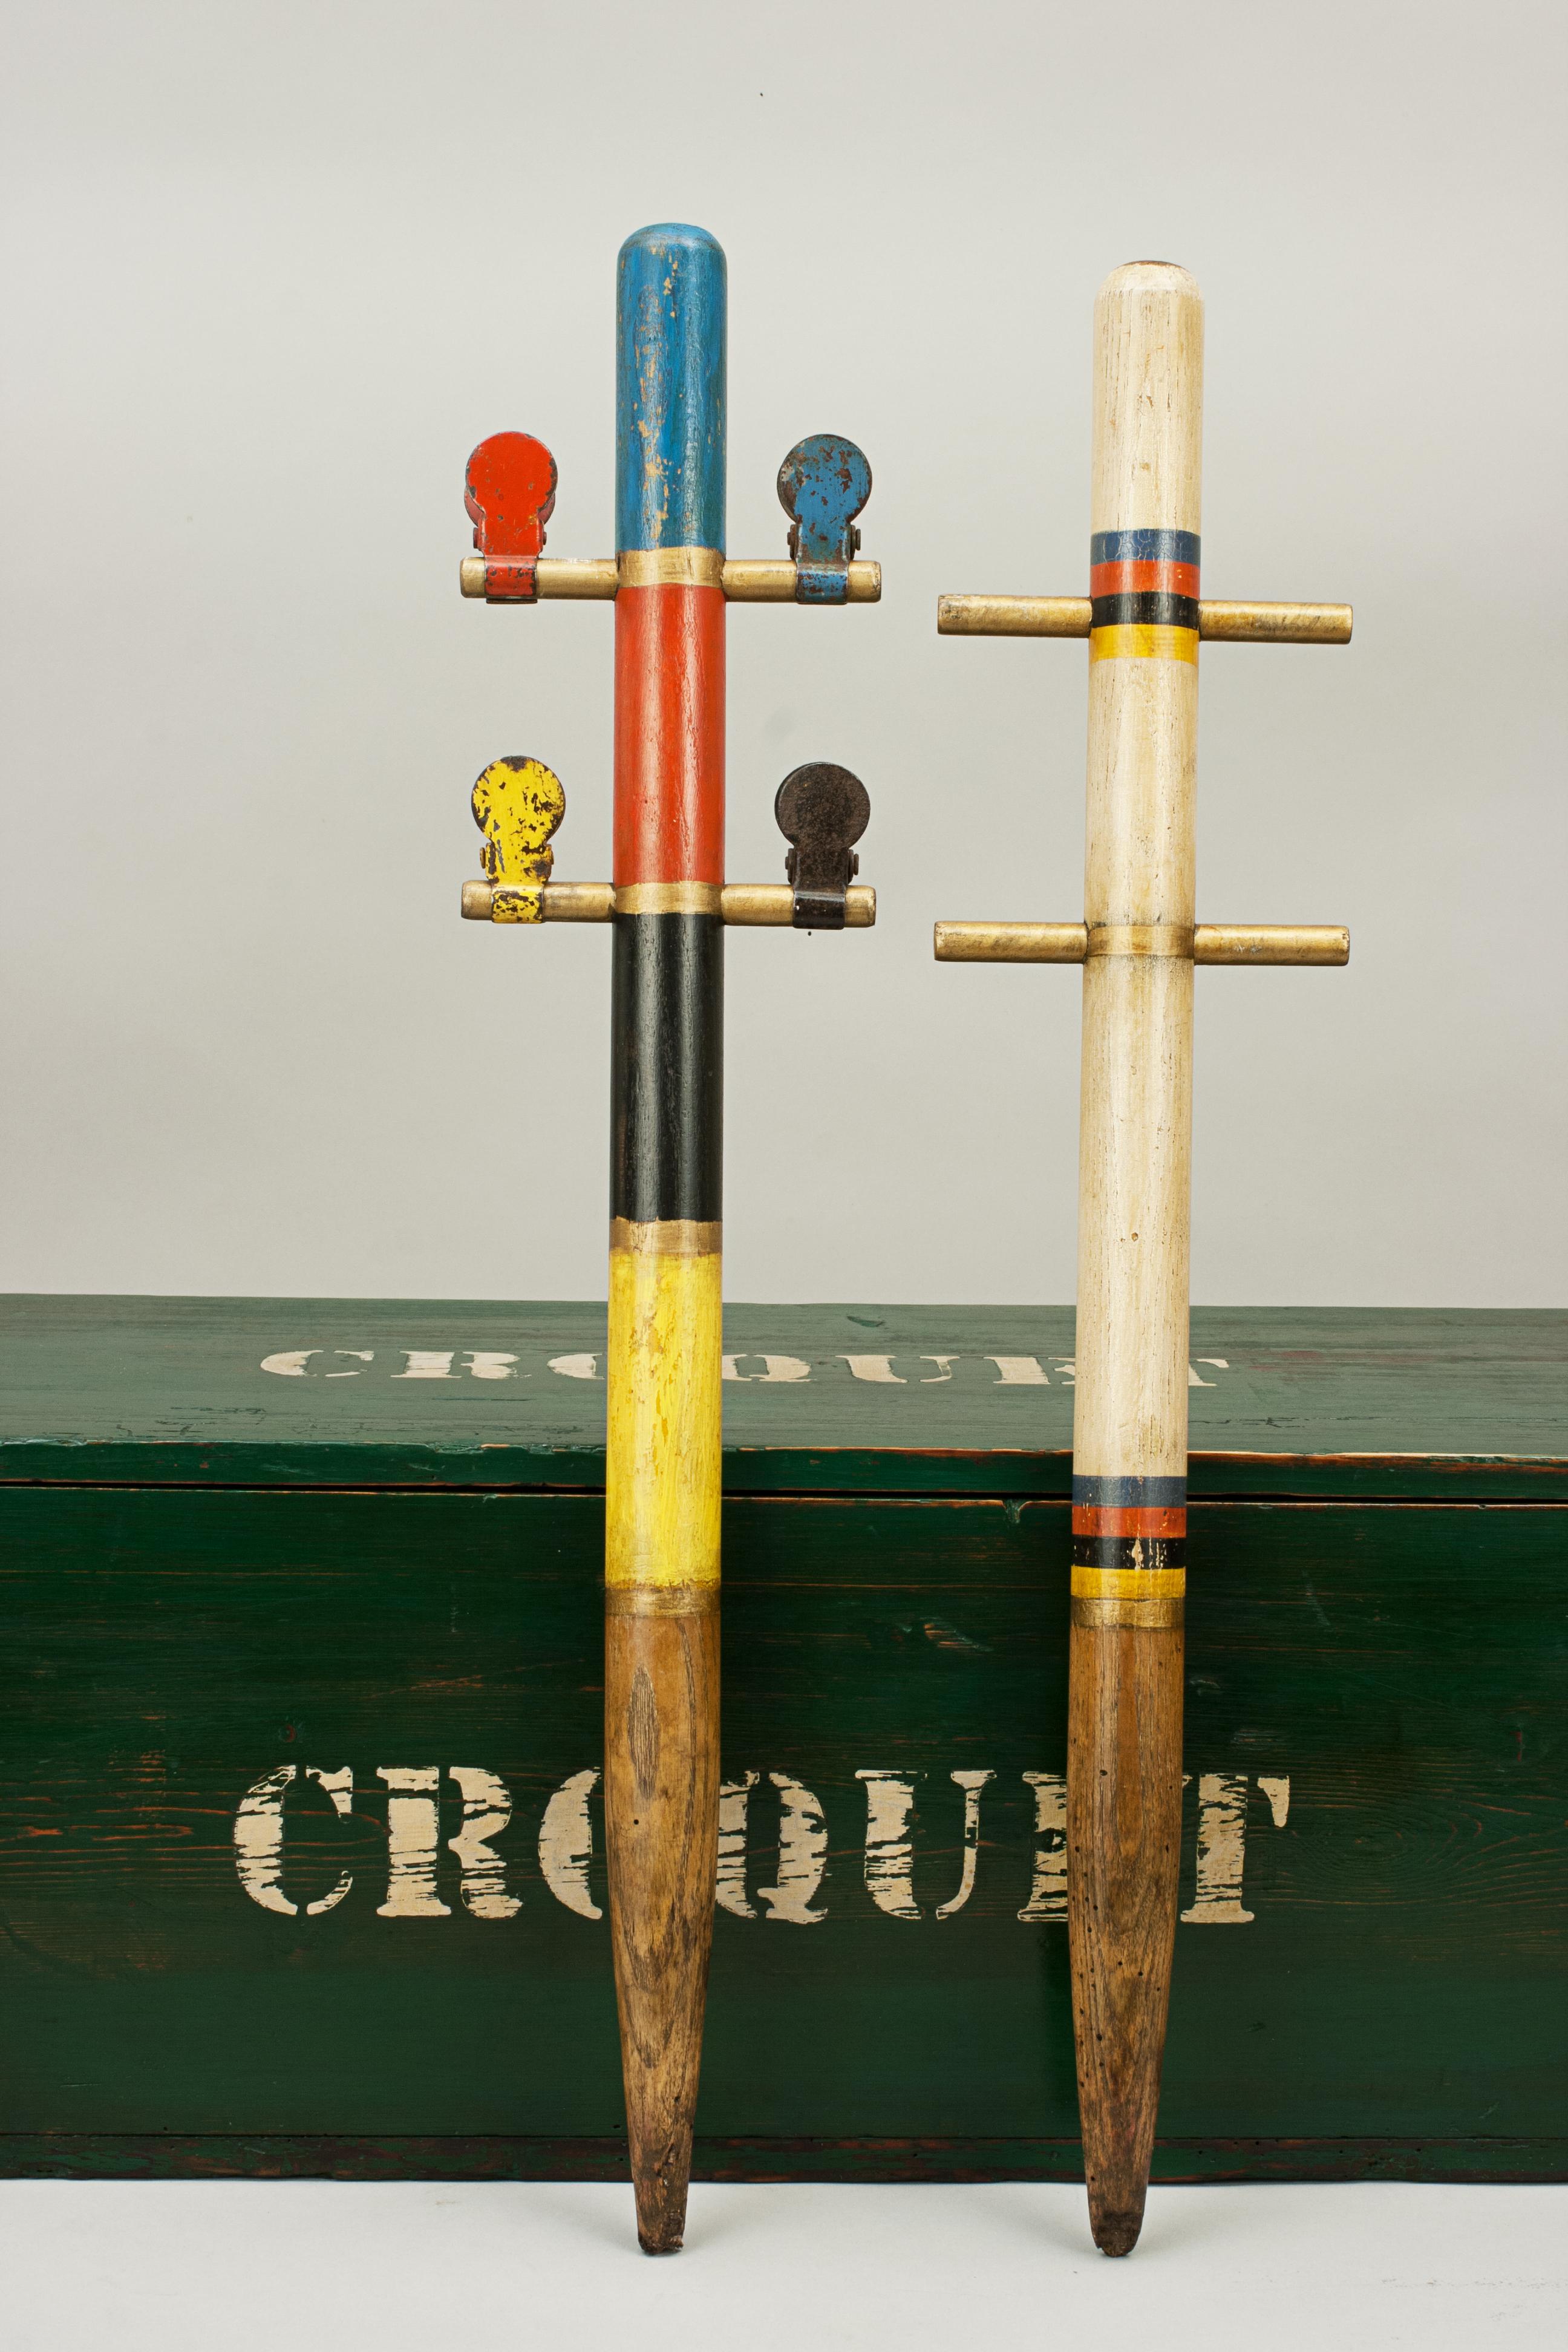 Bateman Stroud Regulation Croquet Set in Pine Box 1